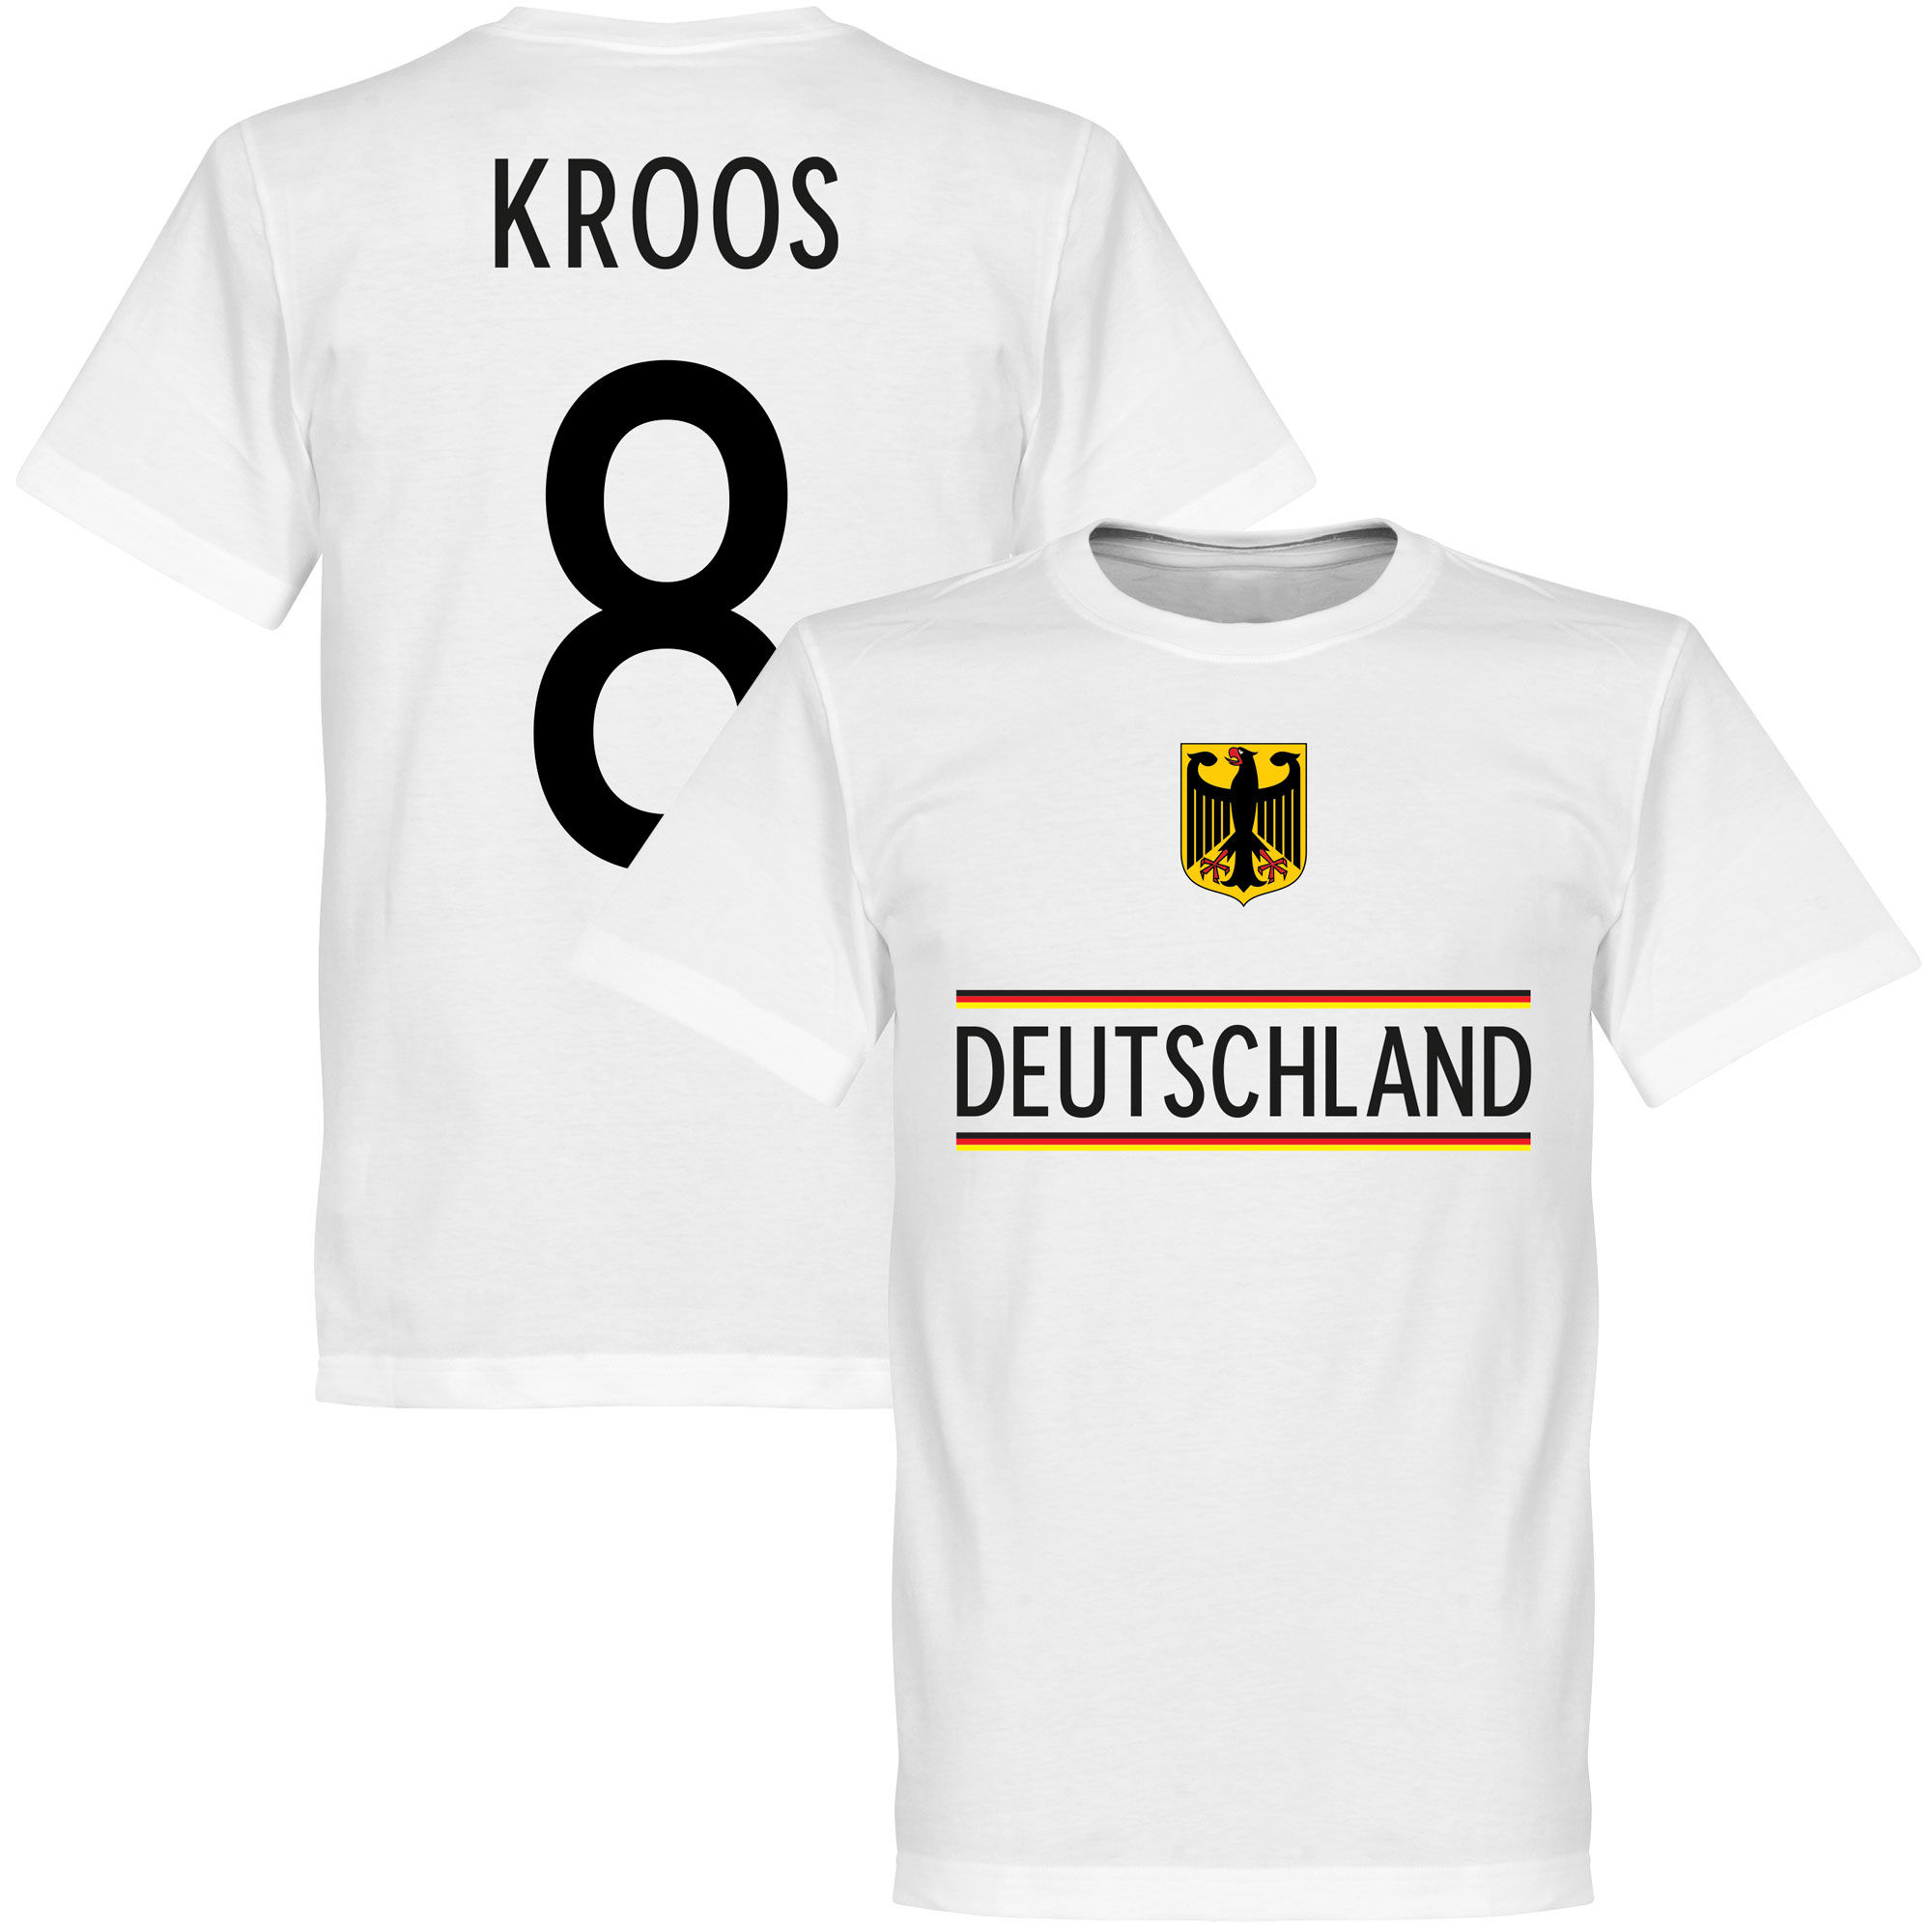 Německo - Tričko - Toni Kroos, bílé, 2020, číslo 8